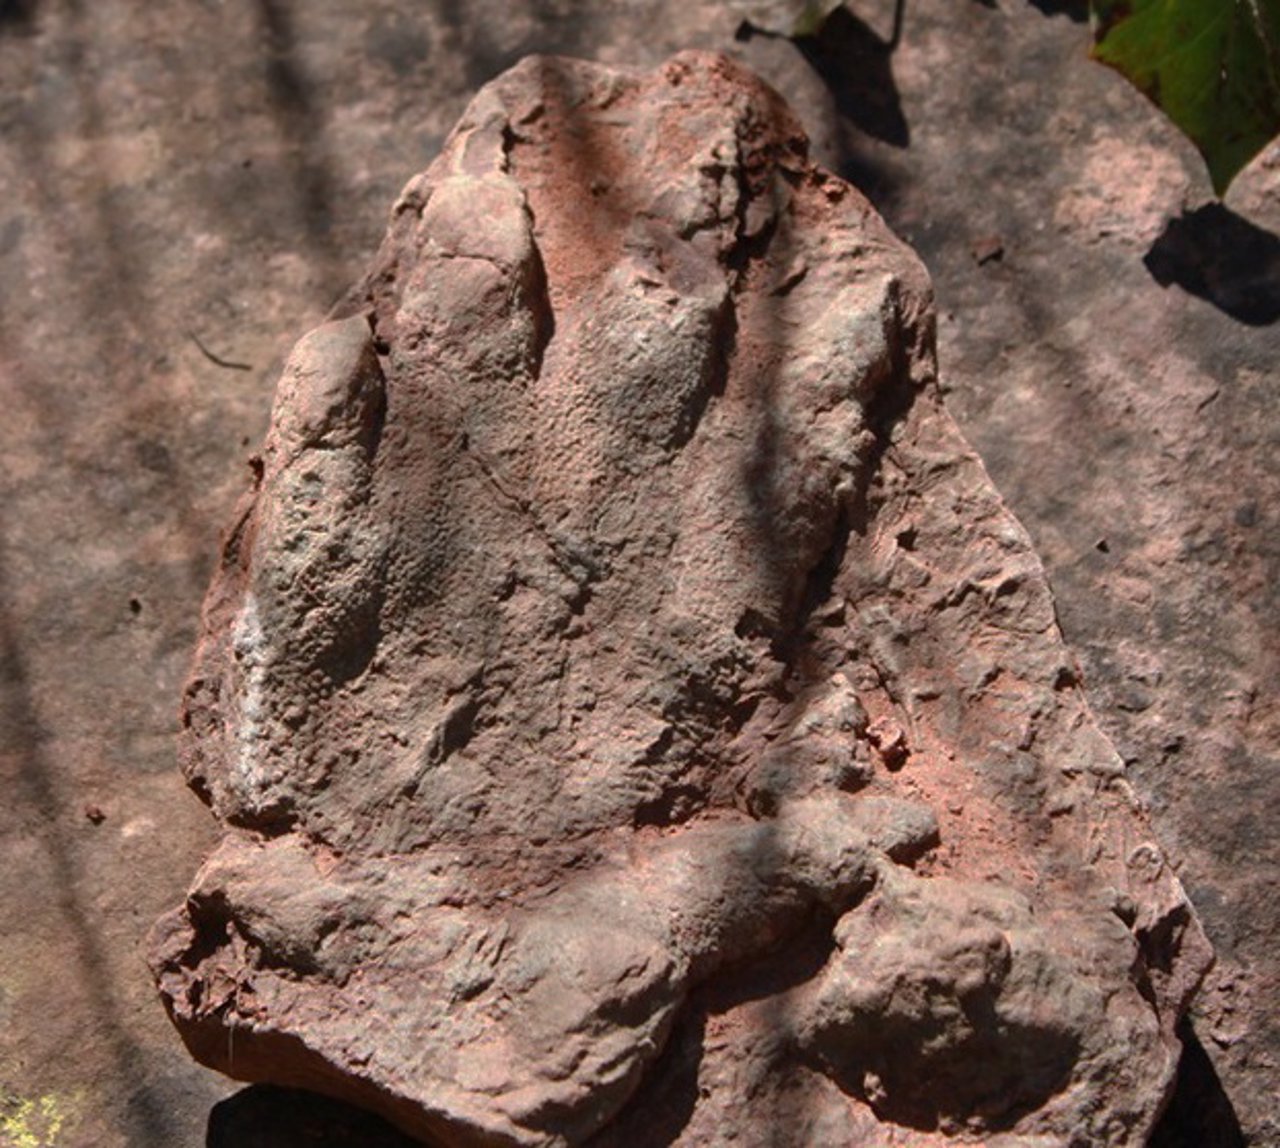 Hallan una huella fosilizada de reptil de 230 millones de años en Olesa